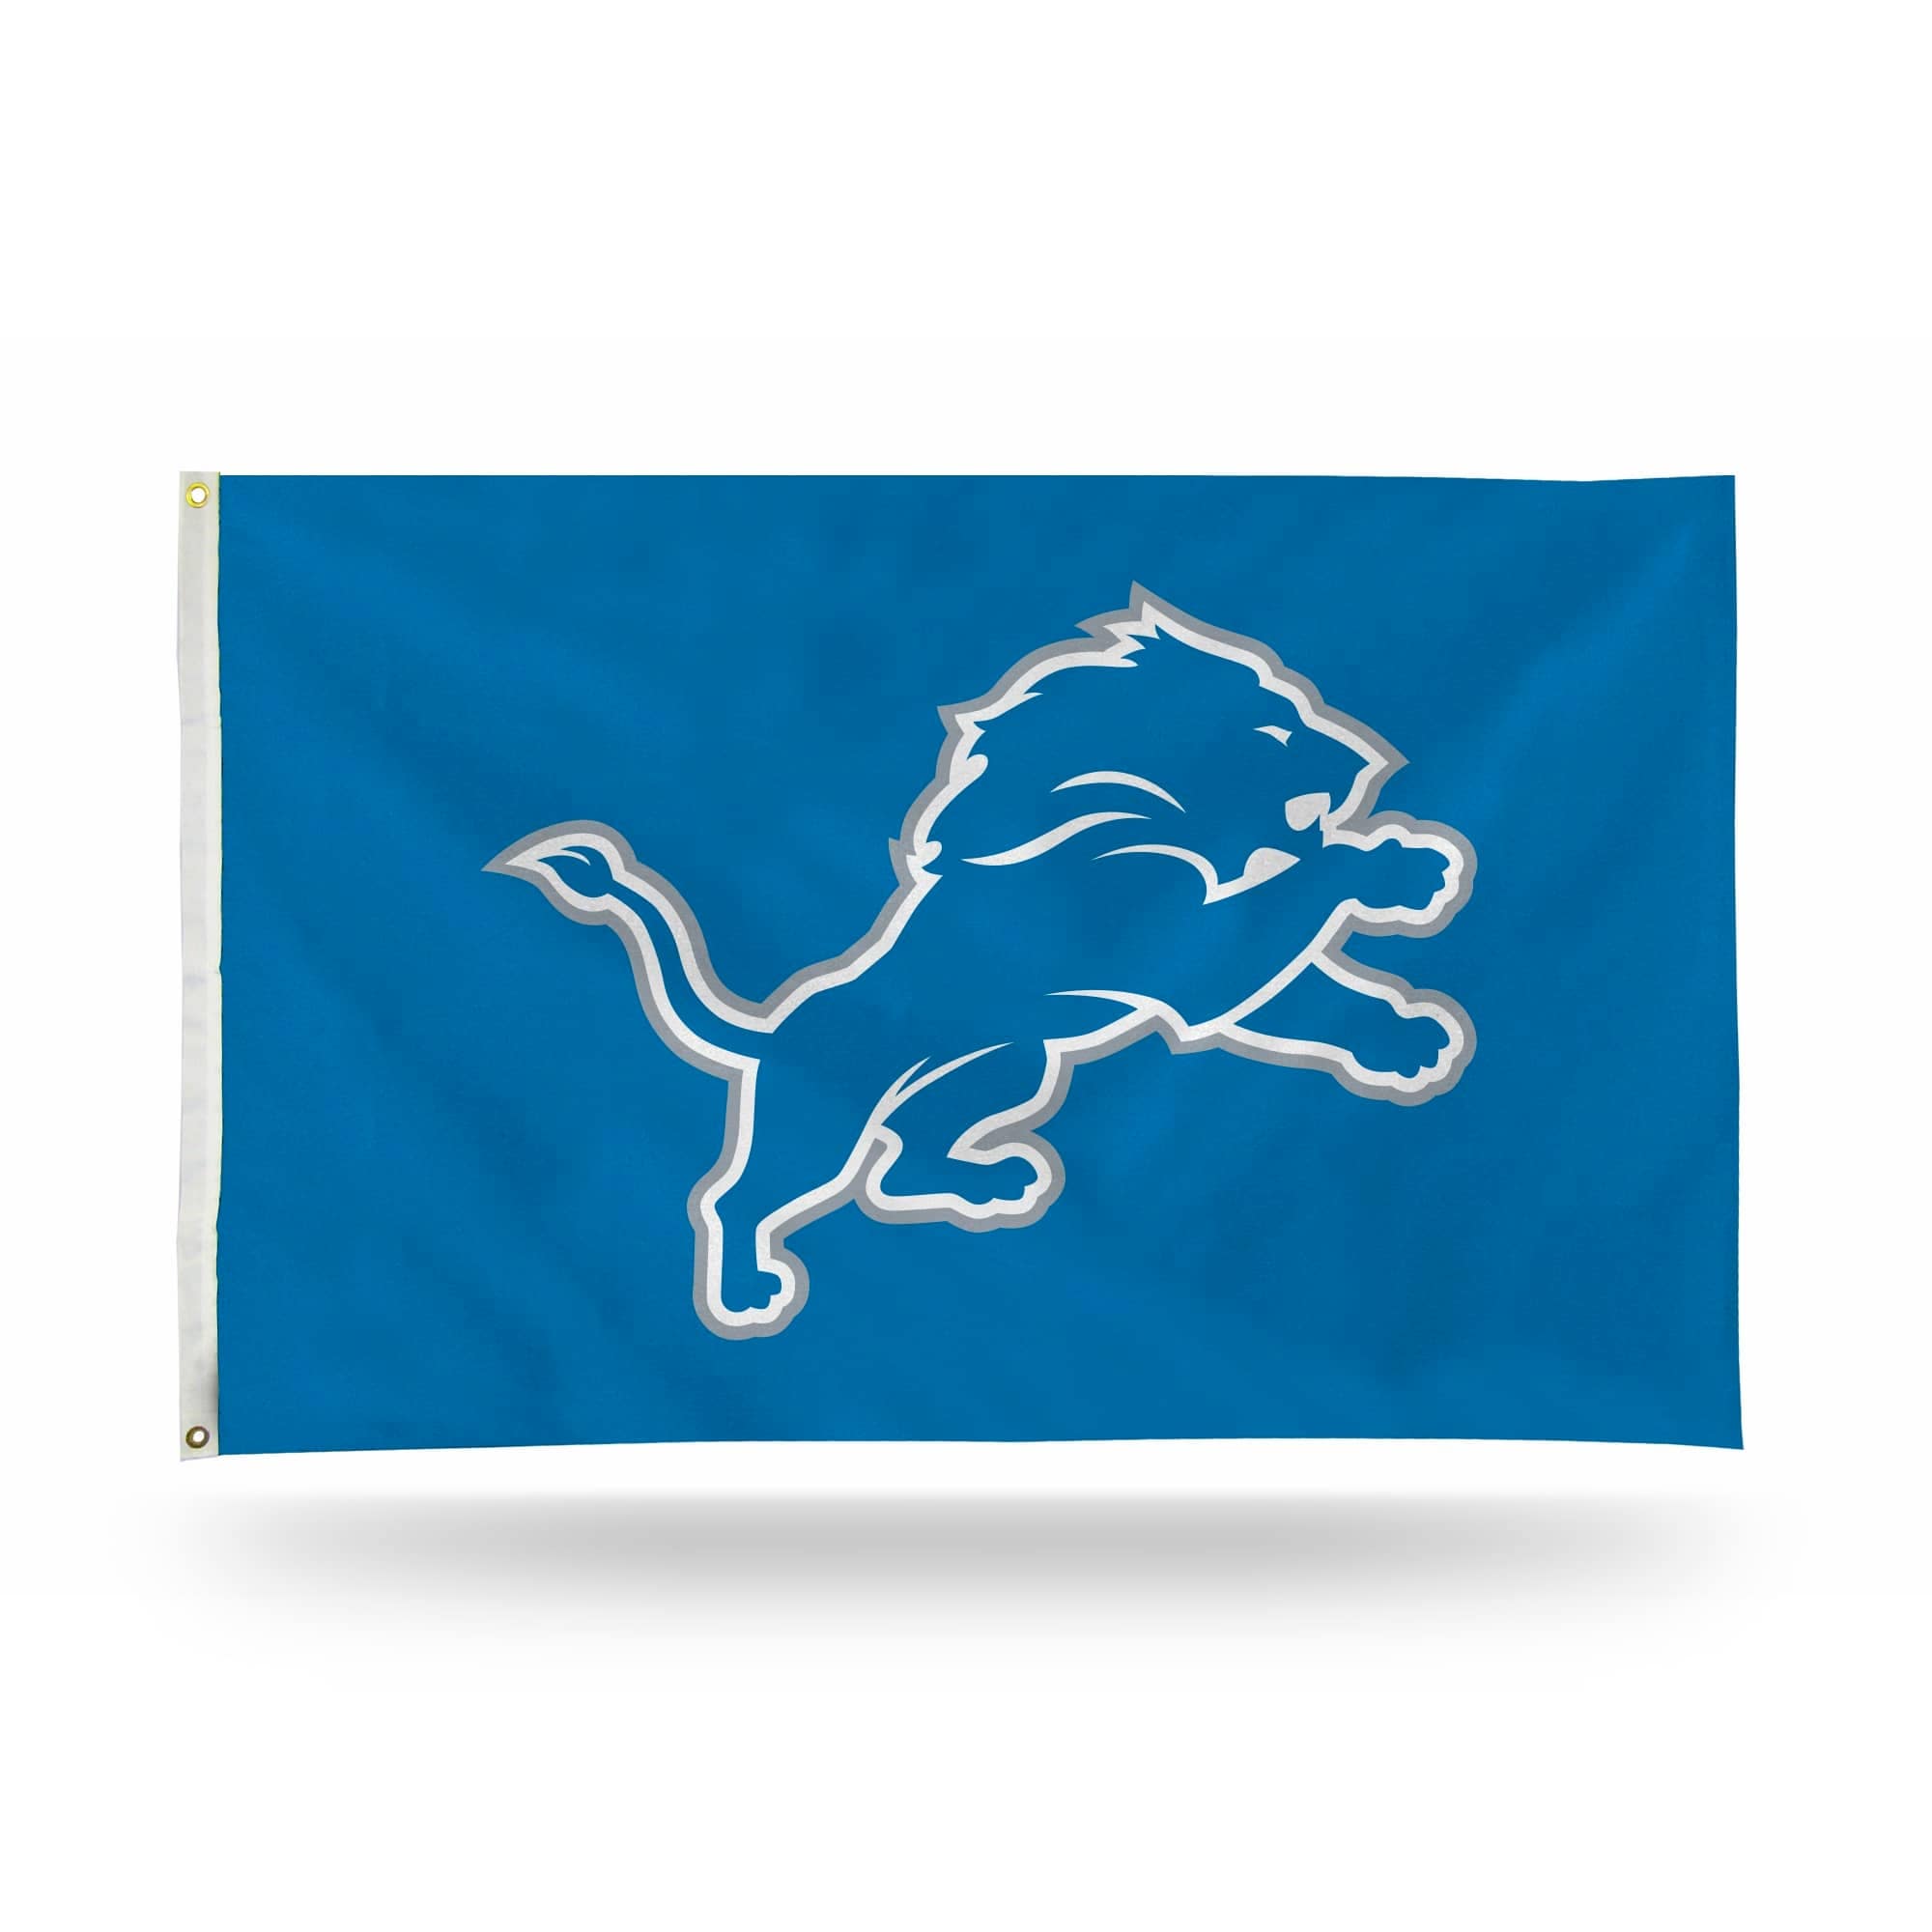 3' x 5' Blue and White NFL Detroit Lions Rectangular Banner Flag